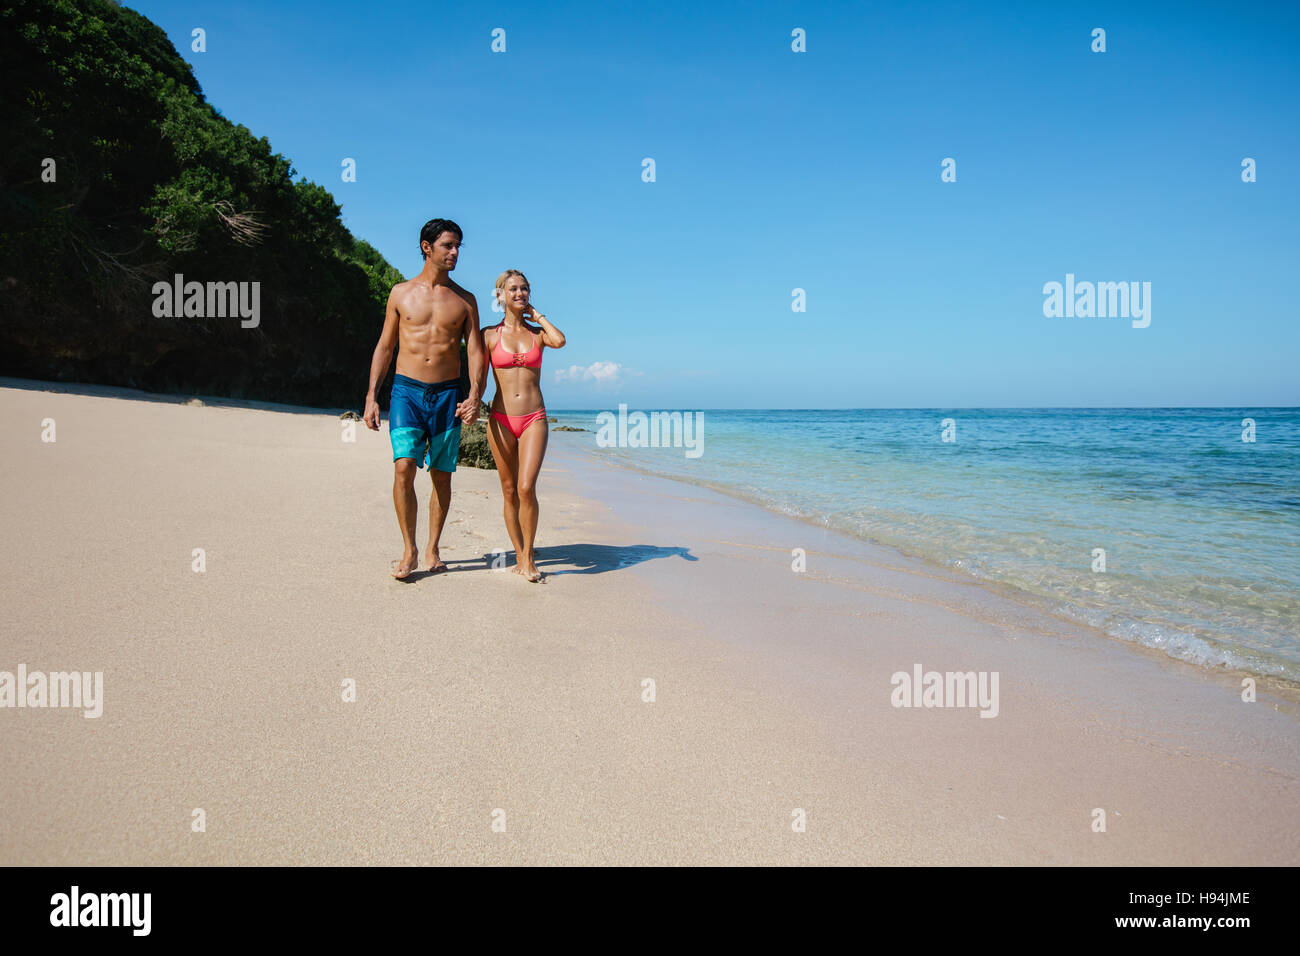 Voller Länge Aufnahme des jungen Flitterwochen am Strand. Junger Mann und Frau ein Spaziergang am Ufer Meeres. Stockfoto